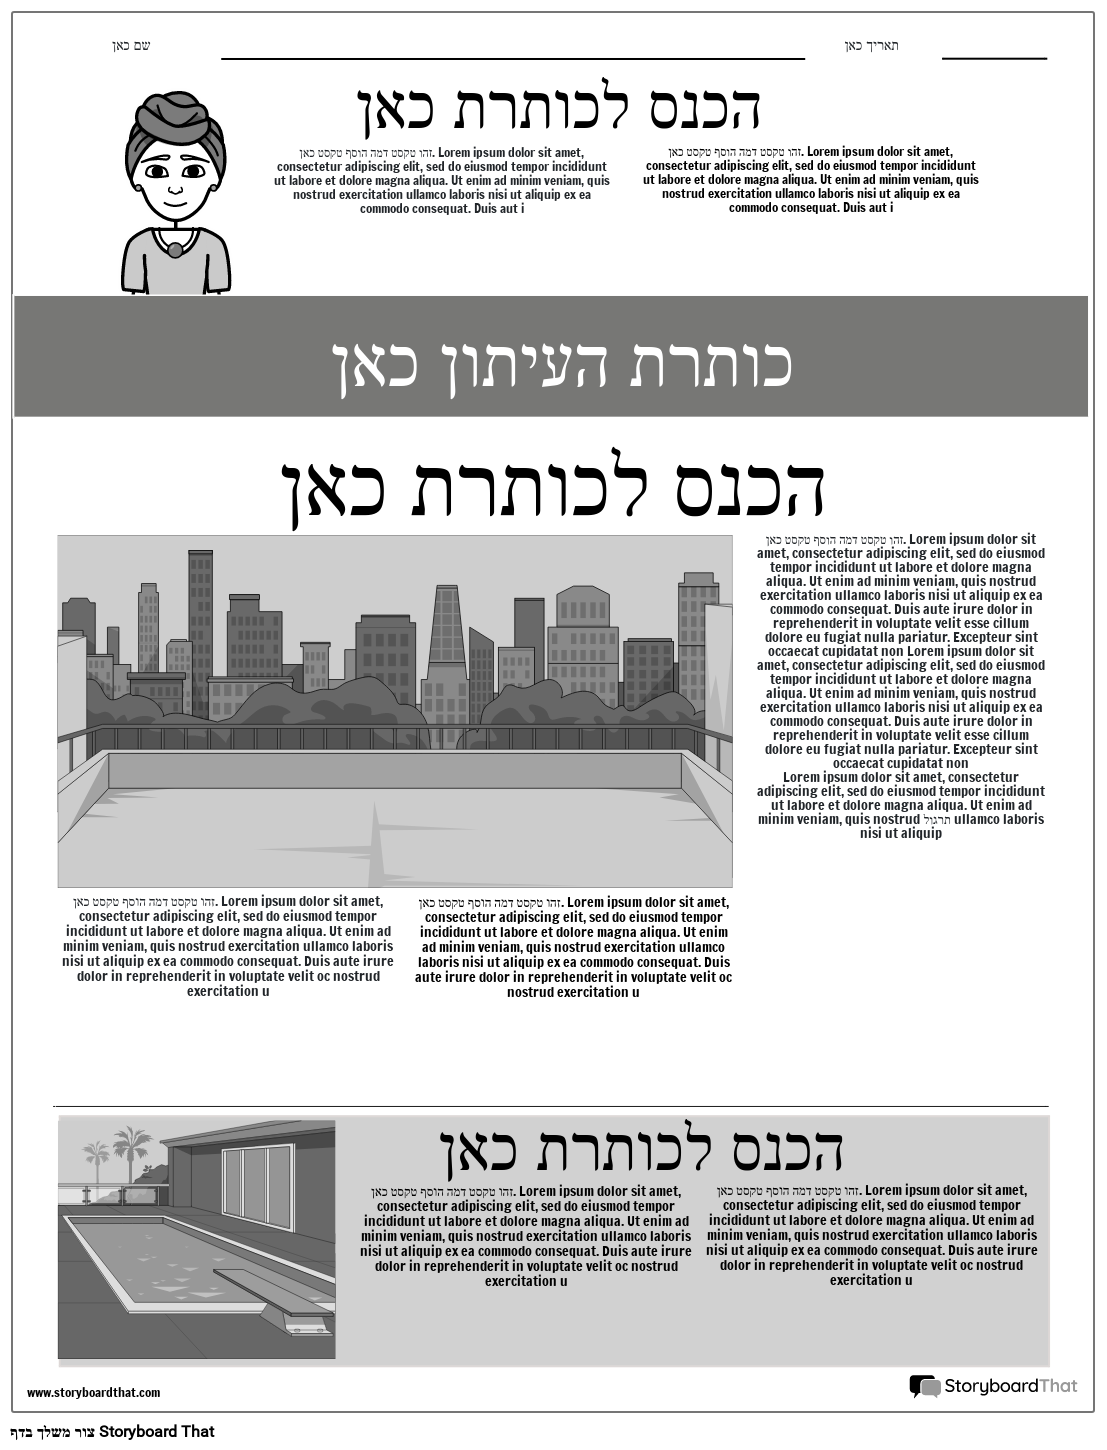 תבנית עיתון בעמוד הראשון אפור